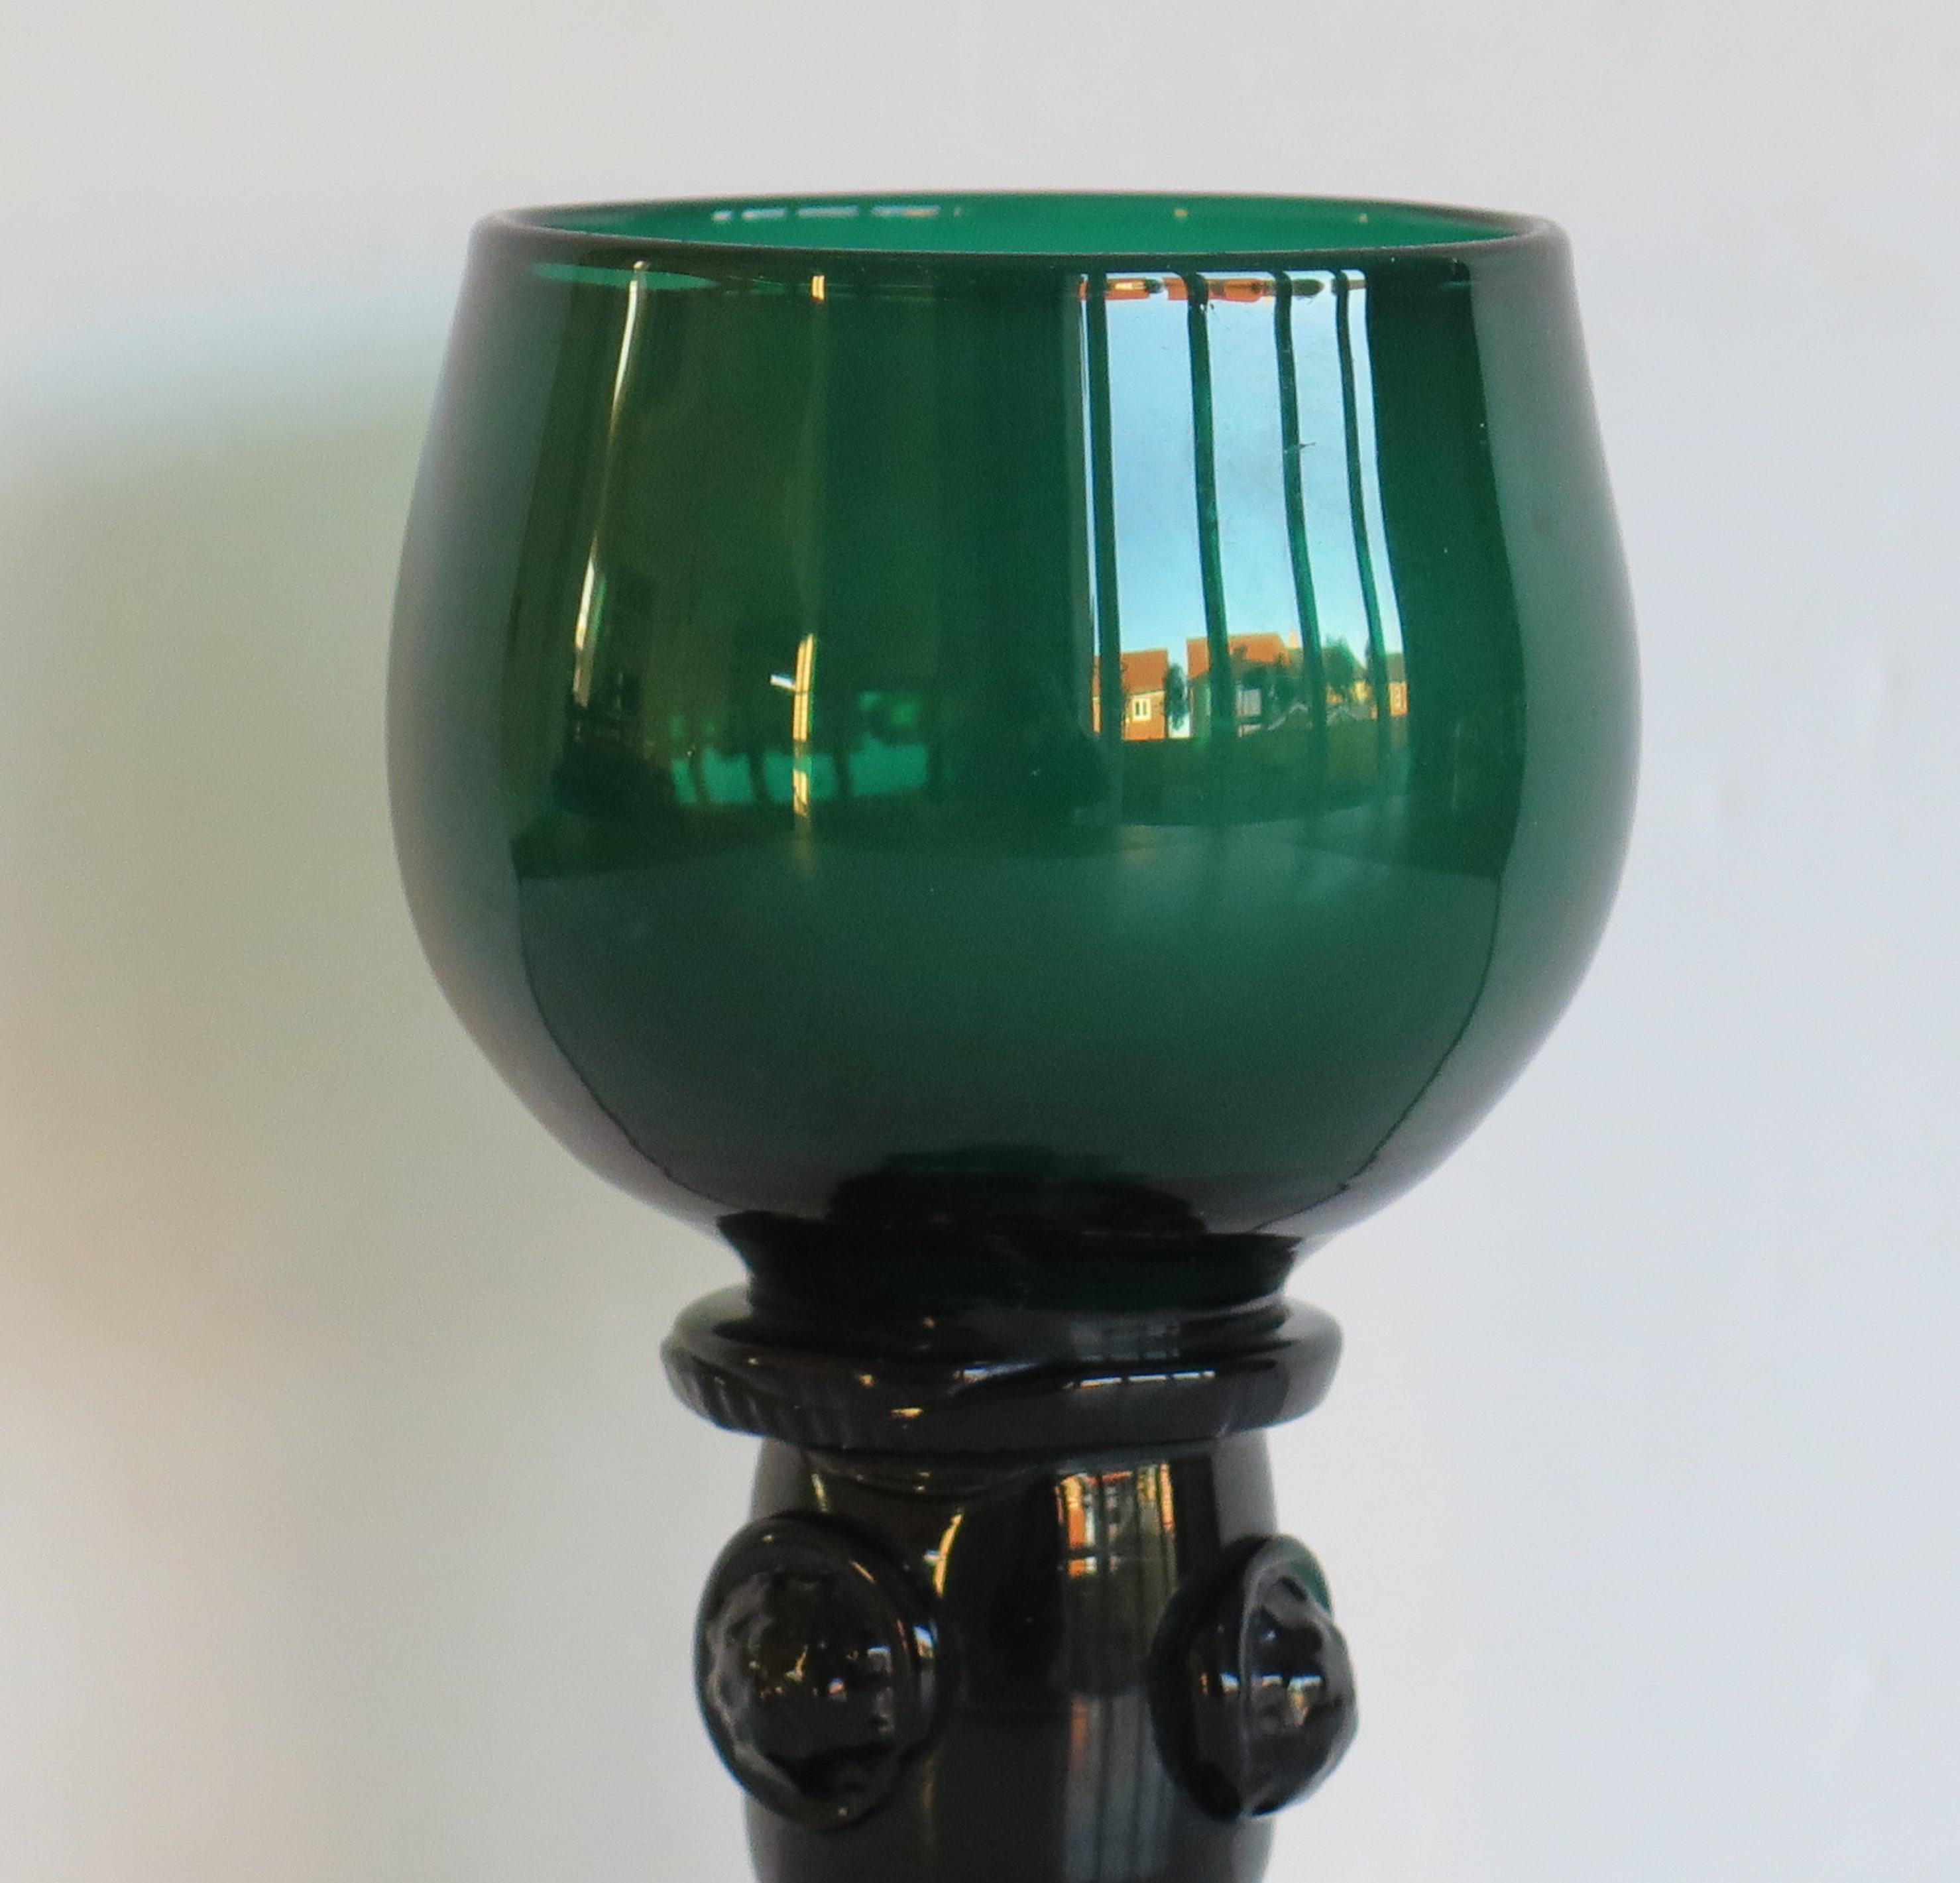 Il s'agit d'un excellent exemple de verre à vin vert de Bristol ou ROAMER, soufflé à la main, datant du début du XIXe siècle et de la période de la Régence de George 111, vers 1815.

Ces ROAMERS en verre sont assez rares. Le verre a une coupe avec